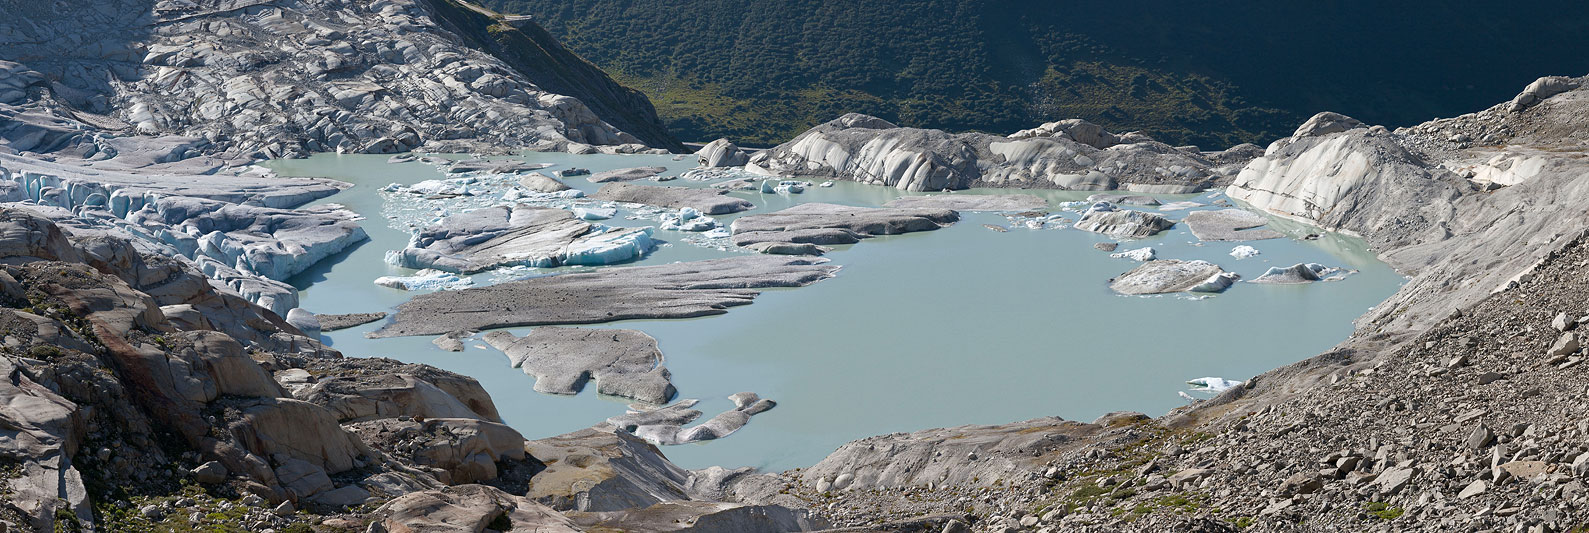 Rhonegletscher, new glacier lake, glacier recession